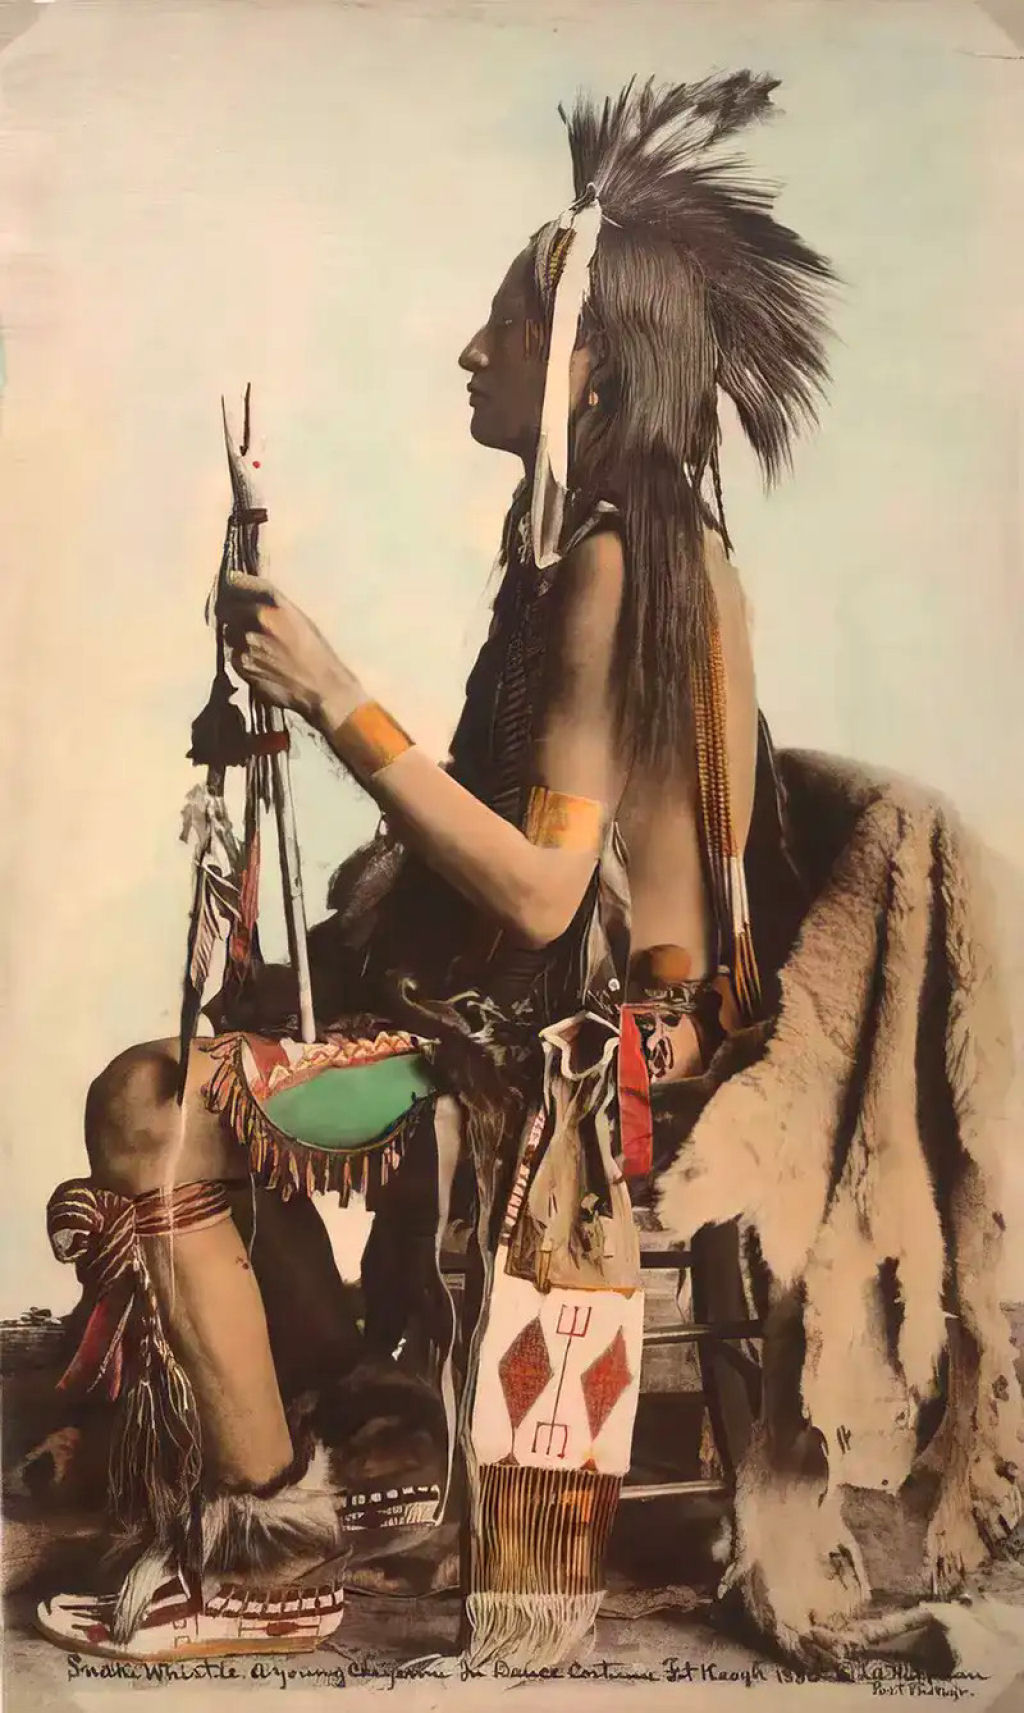 Impressionantes fotos históricas coloridas de nativos americanos do final do século 19 e início do século 20 20